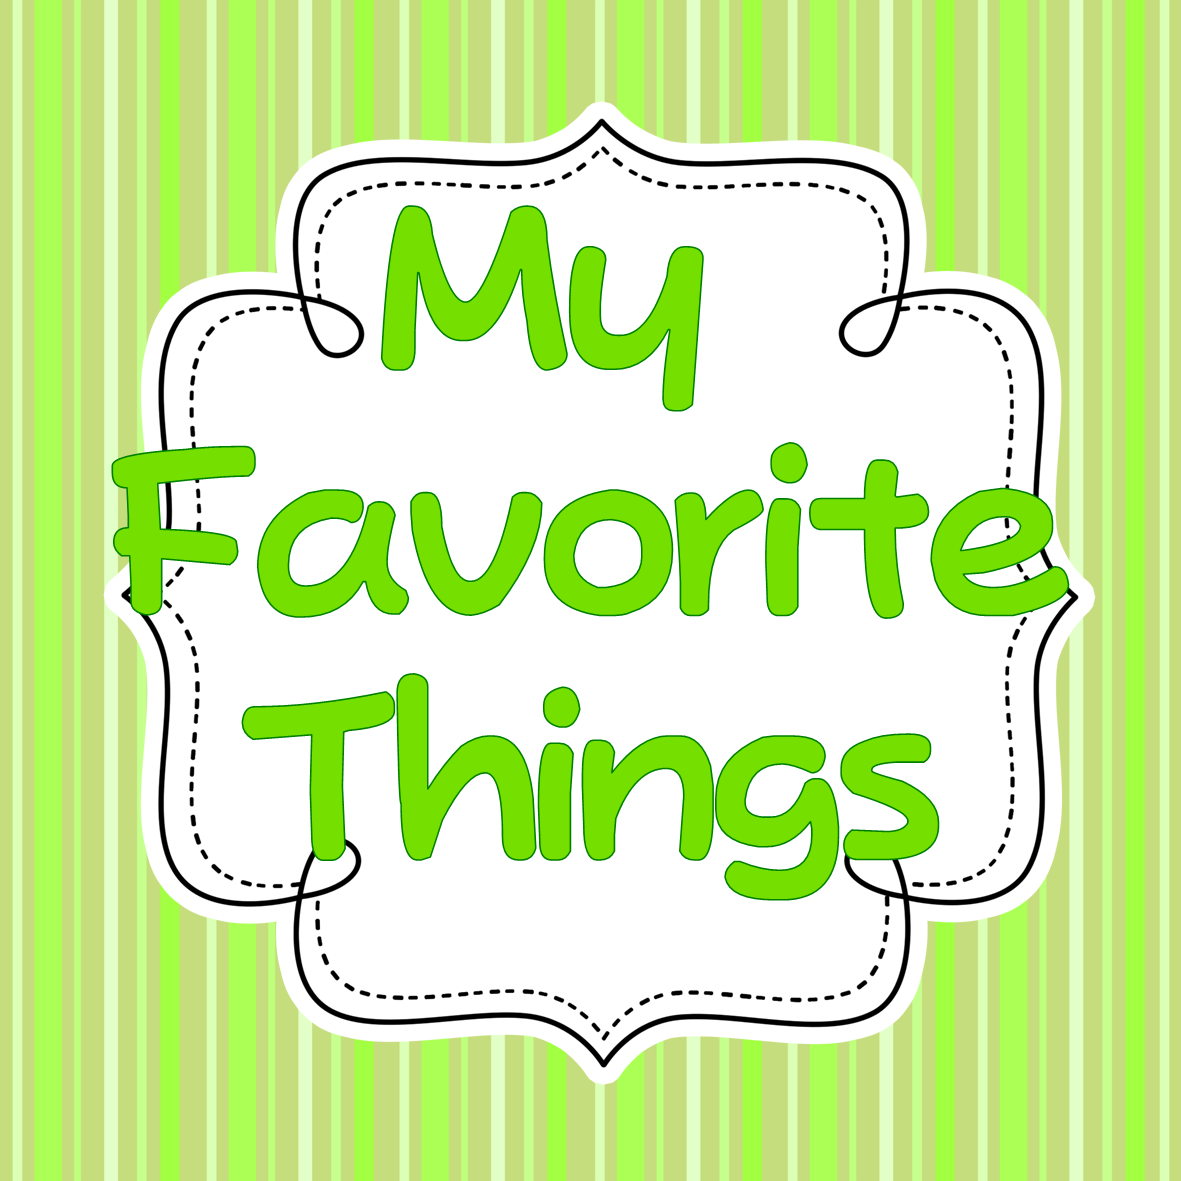 1 favorites. Favorite things. My favorite надпись. My things.